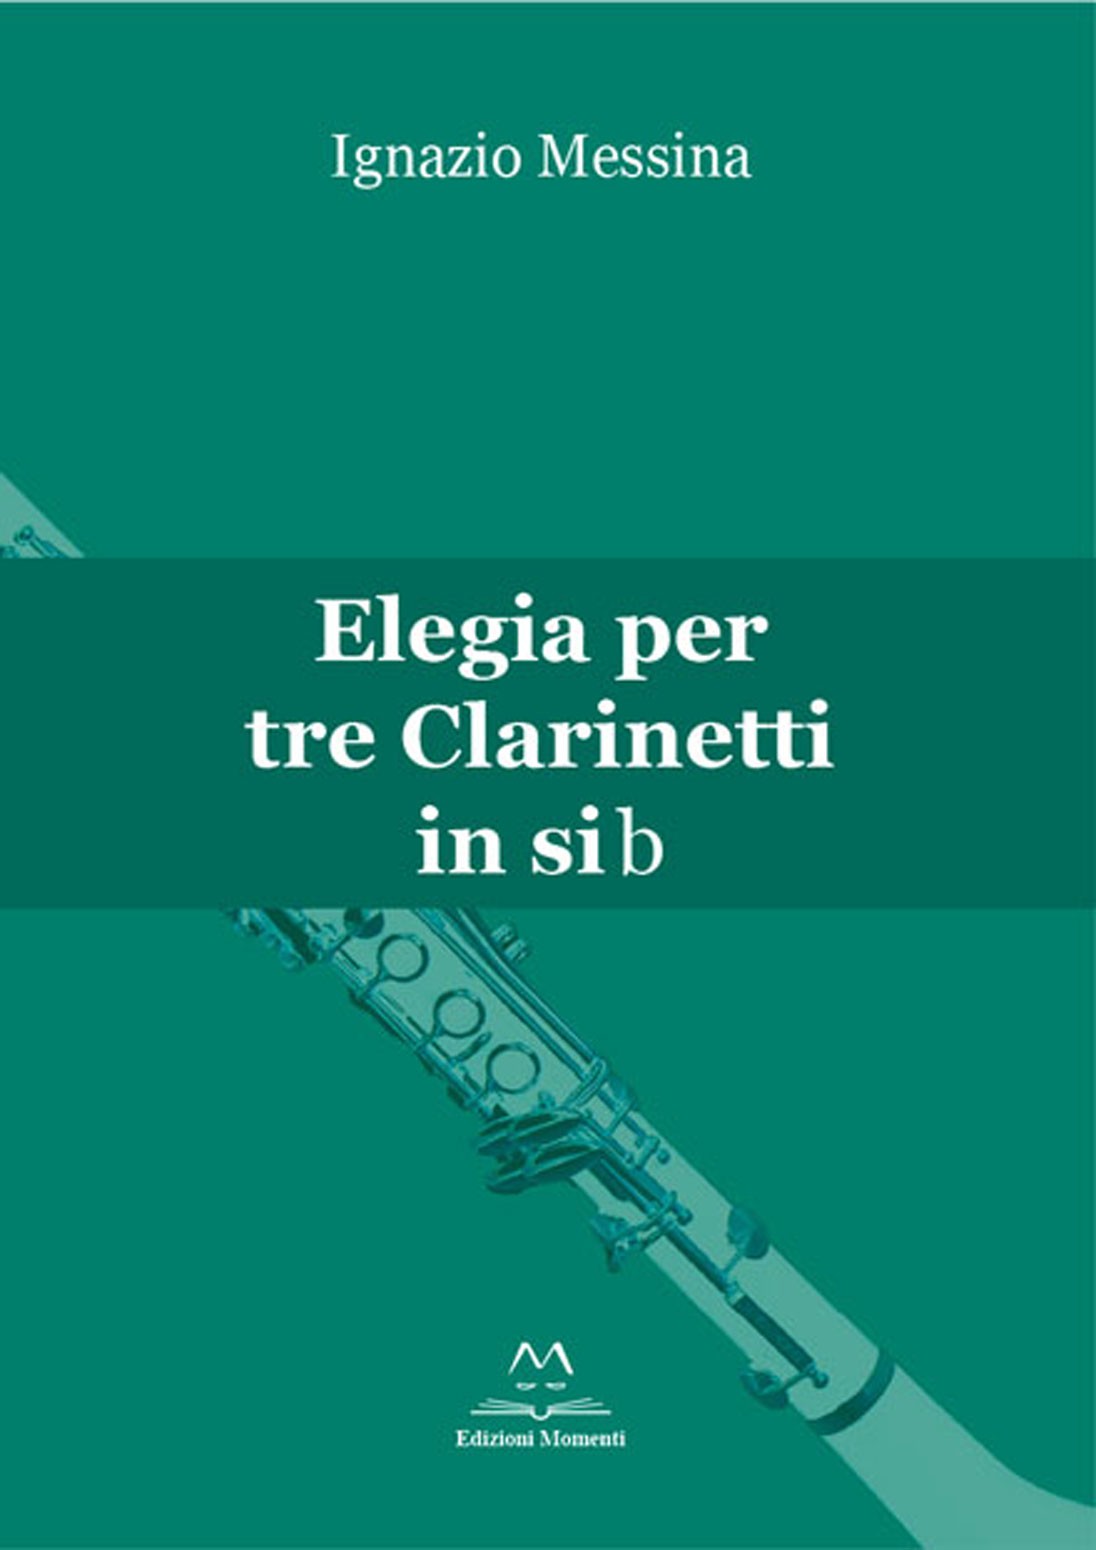 Elegia per tre clarinetti in sib di Ignazio Messina